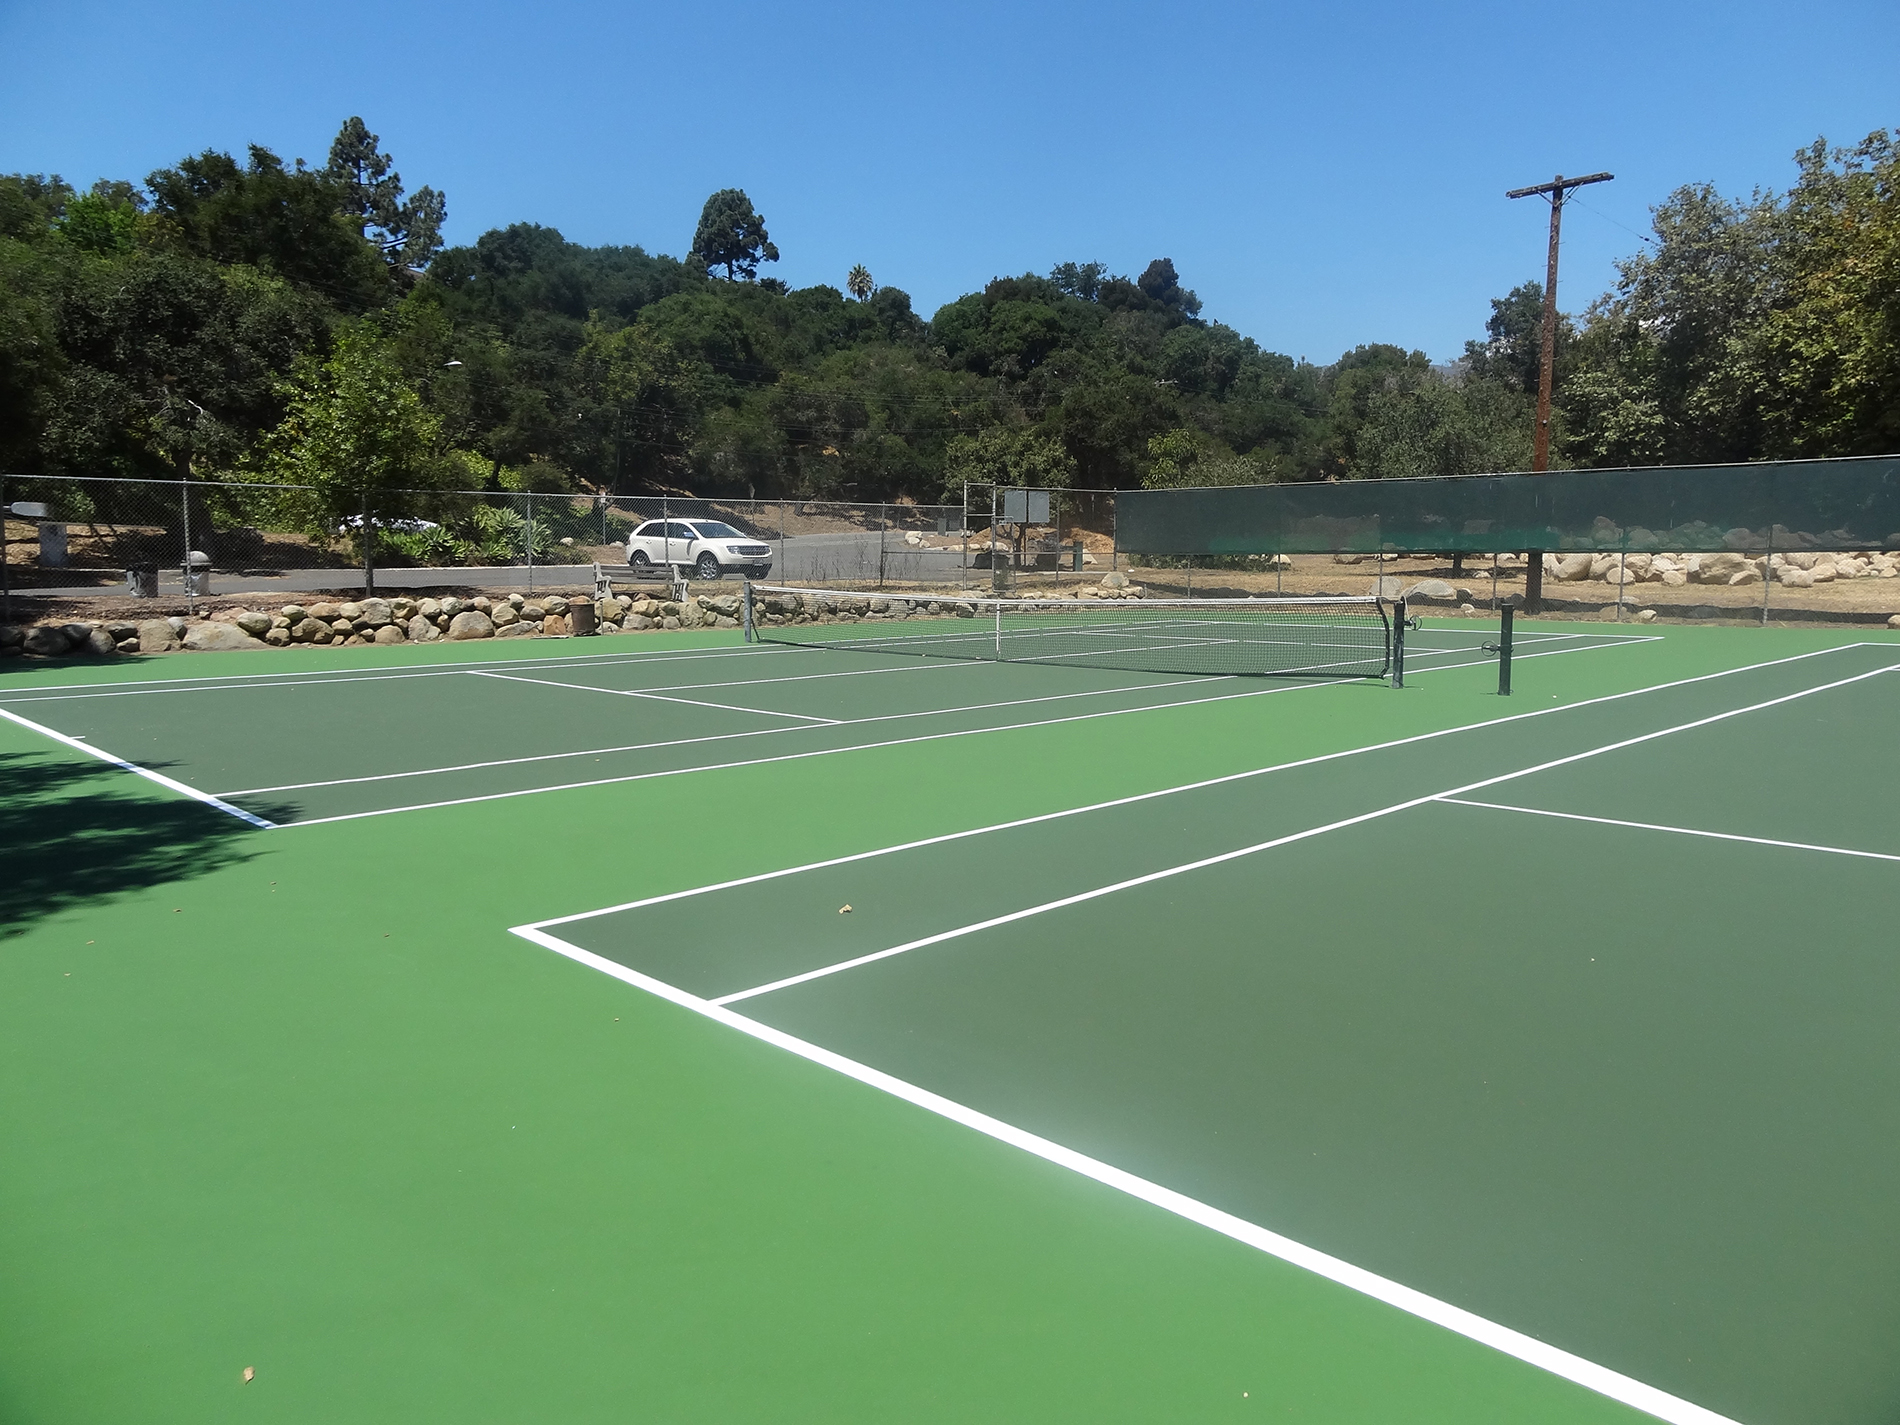 Oak Park Tennis Courts Parks and Recreation